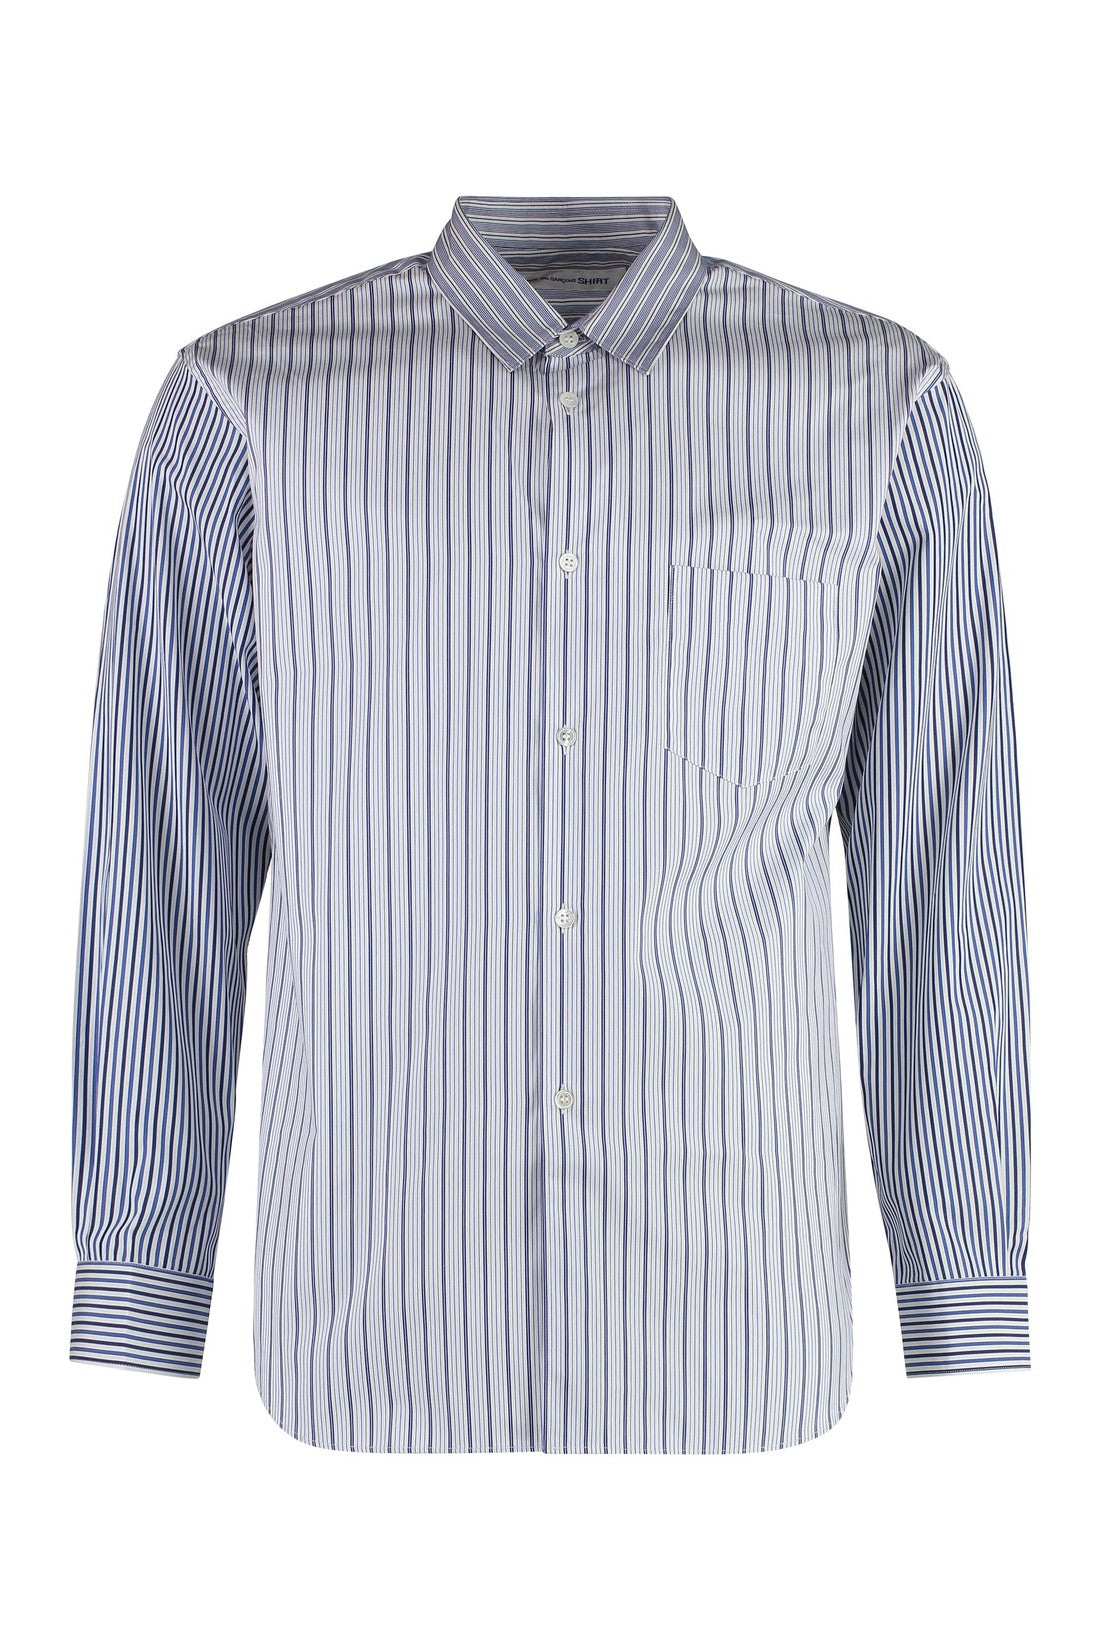 Comme des Garçons SHIRT-OUTLET-SALE-Striped cotton shirt-ARCHIVIST